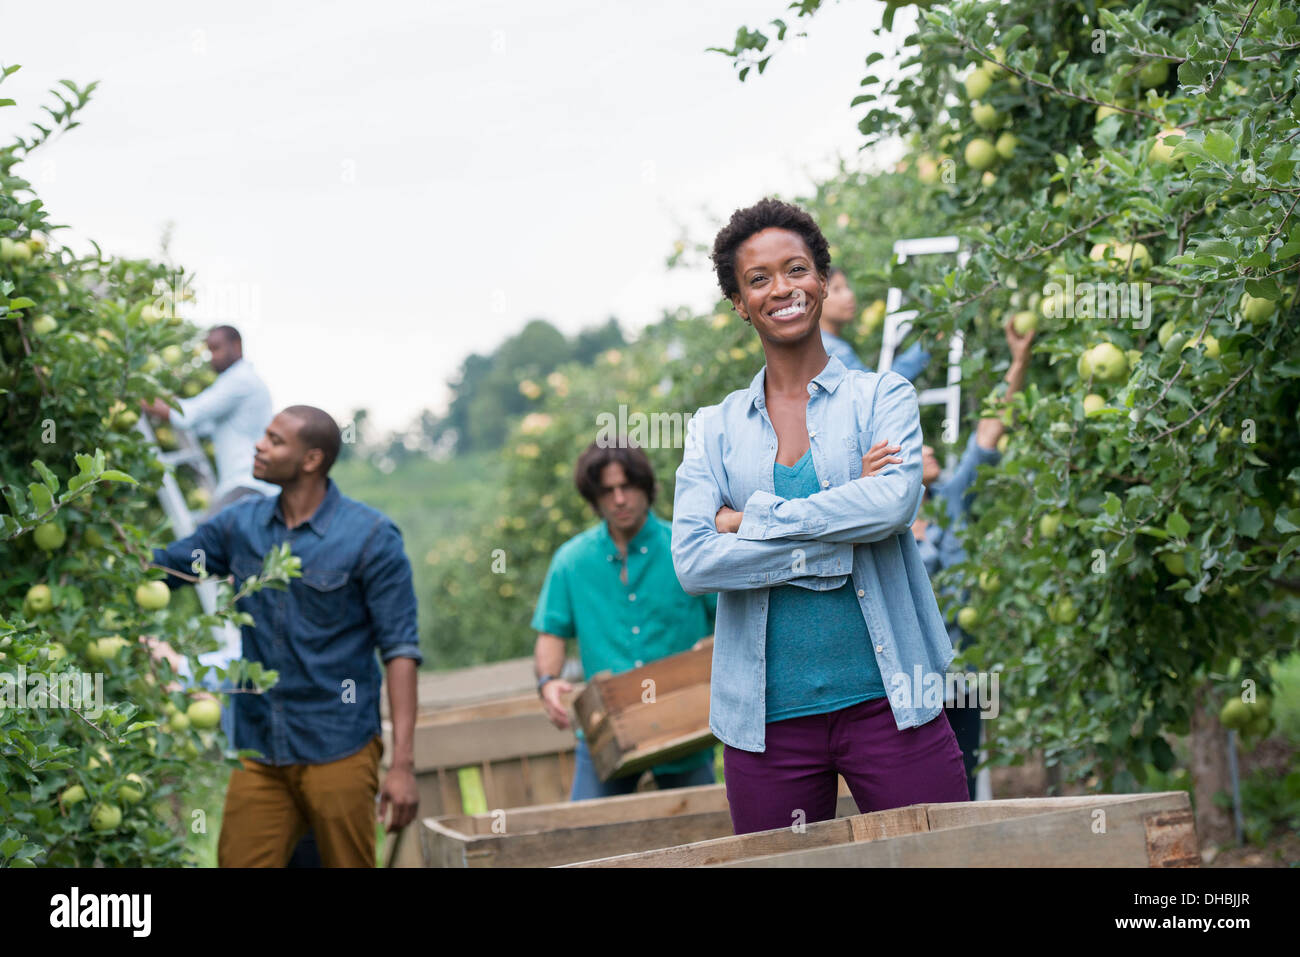 Einem organischen Obstgarten auf einem Bauernhof. Eine Gruppe von Menschen, die grüne Äpfel von den Bäumen pflücken. Stockfoto